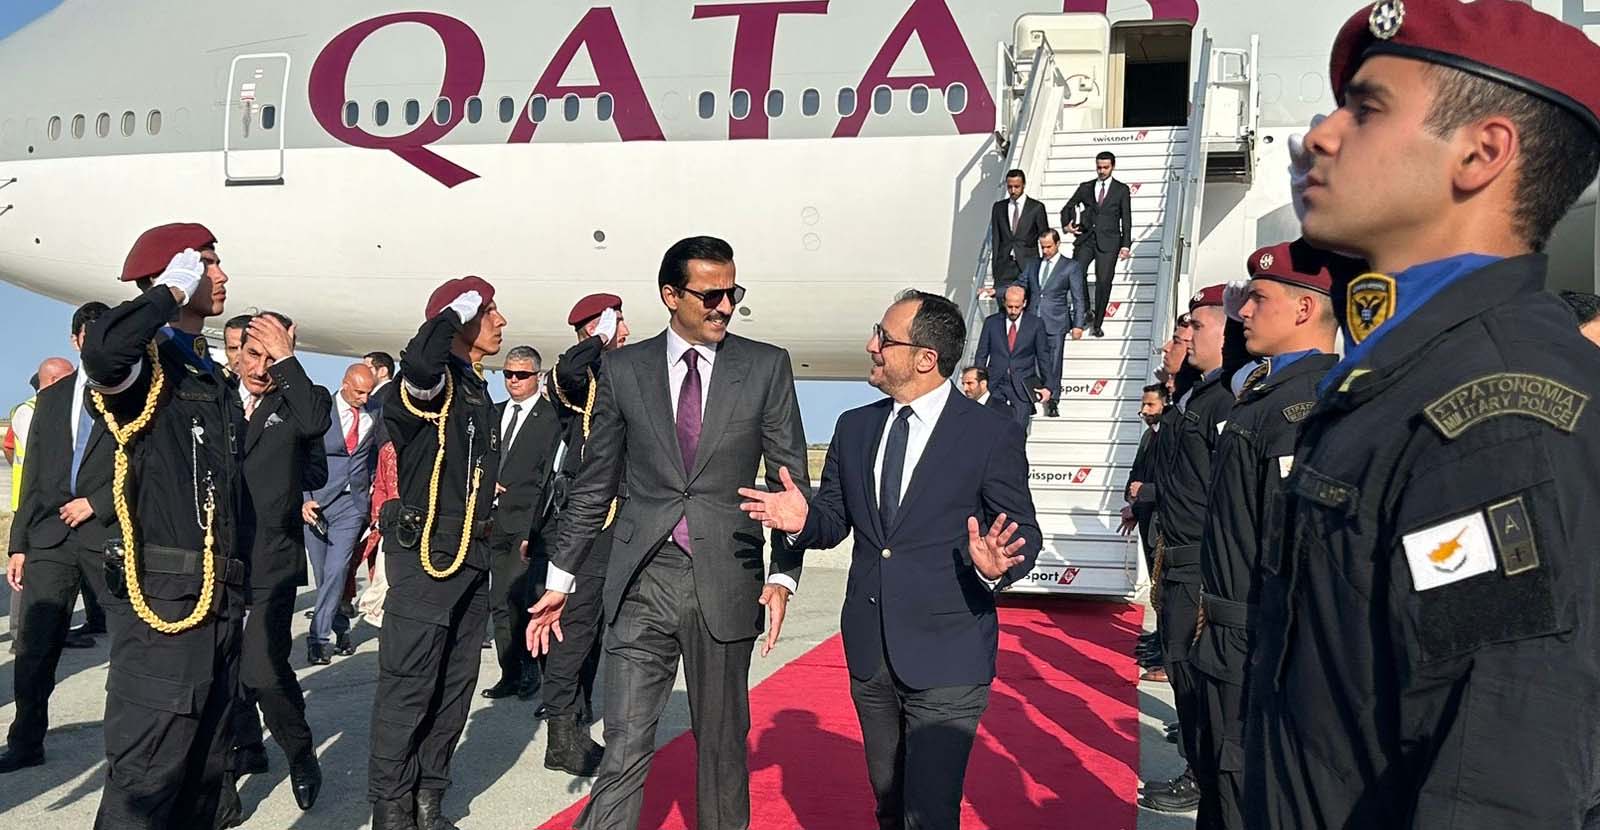 Έφτασε στην Κύπρο ο Εμίρης του Κατάρ - Τον υποδέχθηκε ο ΠτΔ, θα παρακαθίσουν σε ιδιωτικό δείπνο